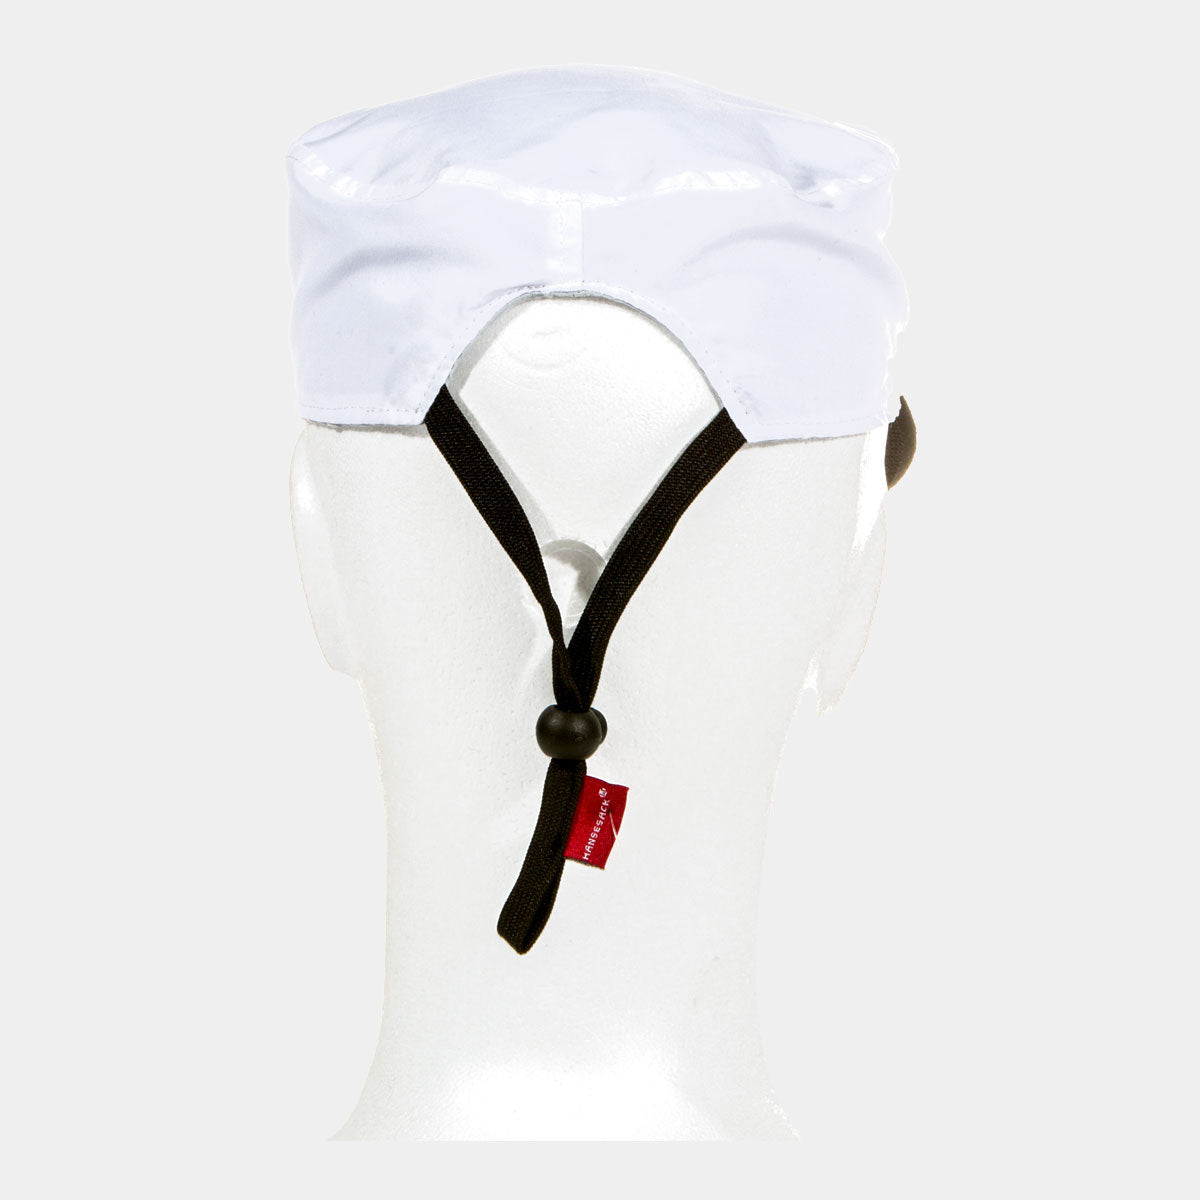 Hansesack Produktbild Seglermütze Wendemütze weiße Seite mit Original Hansesack Logo von hinten